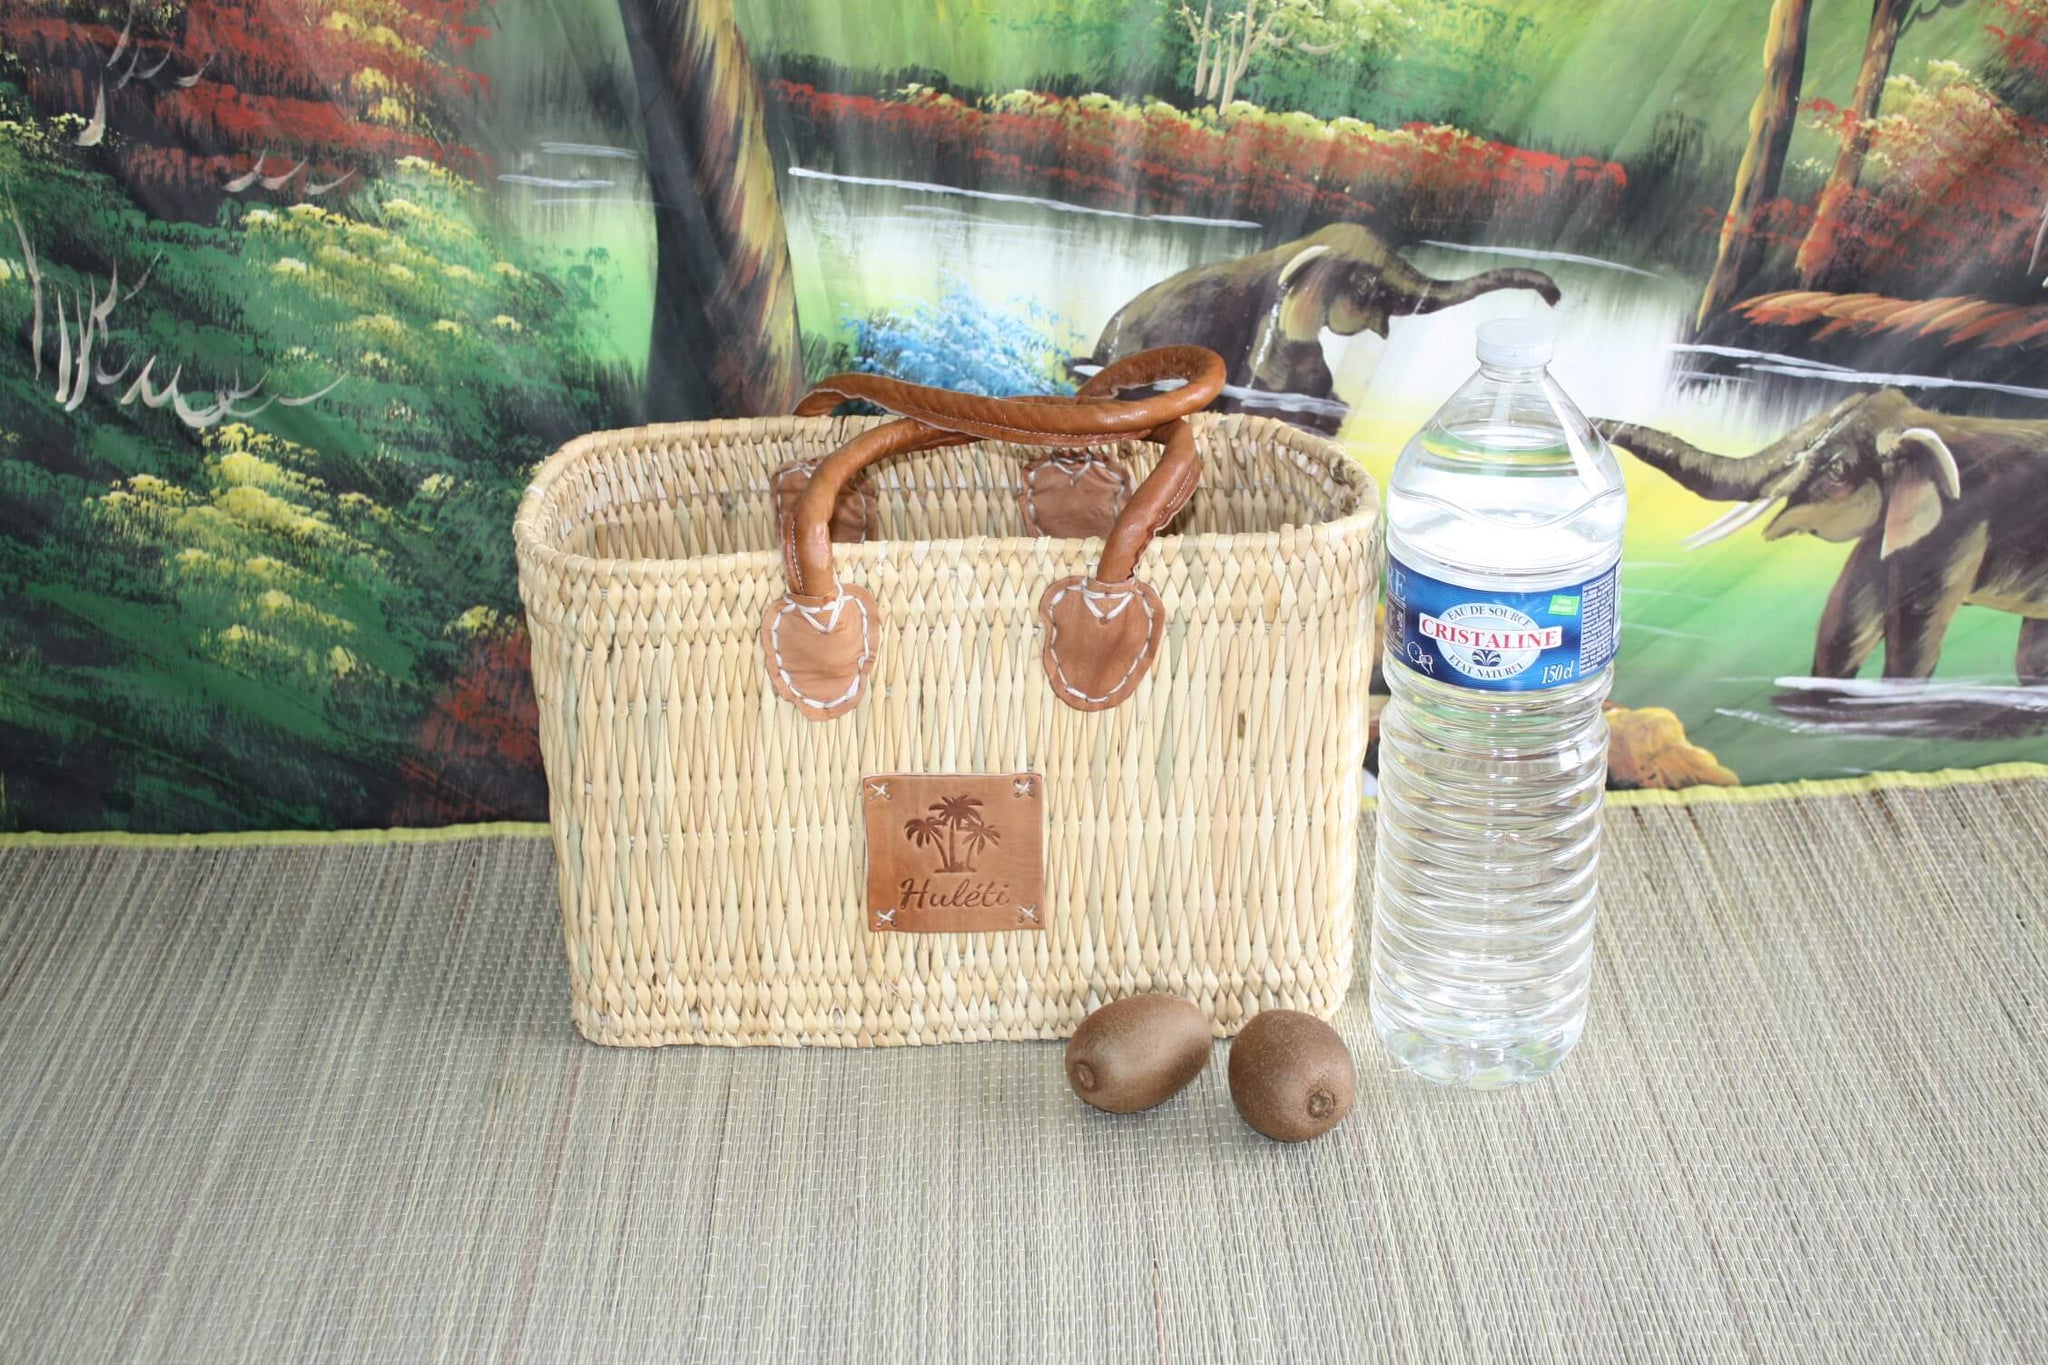 Hervorragende MAROKKANISCHE Einkaufstasche Rush Basket - 3 Größen - ideal zum Einkaufen, für Märkte, zur Arbeit, zum Strand... NATUR &amp; LEDER